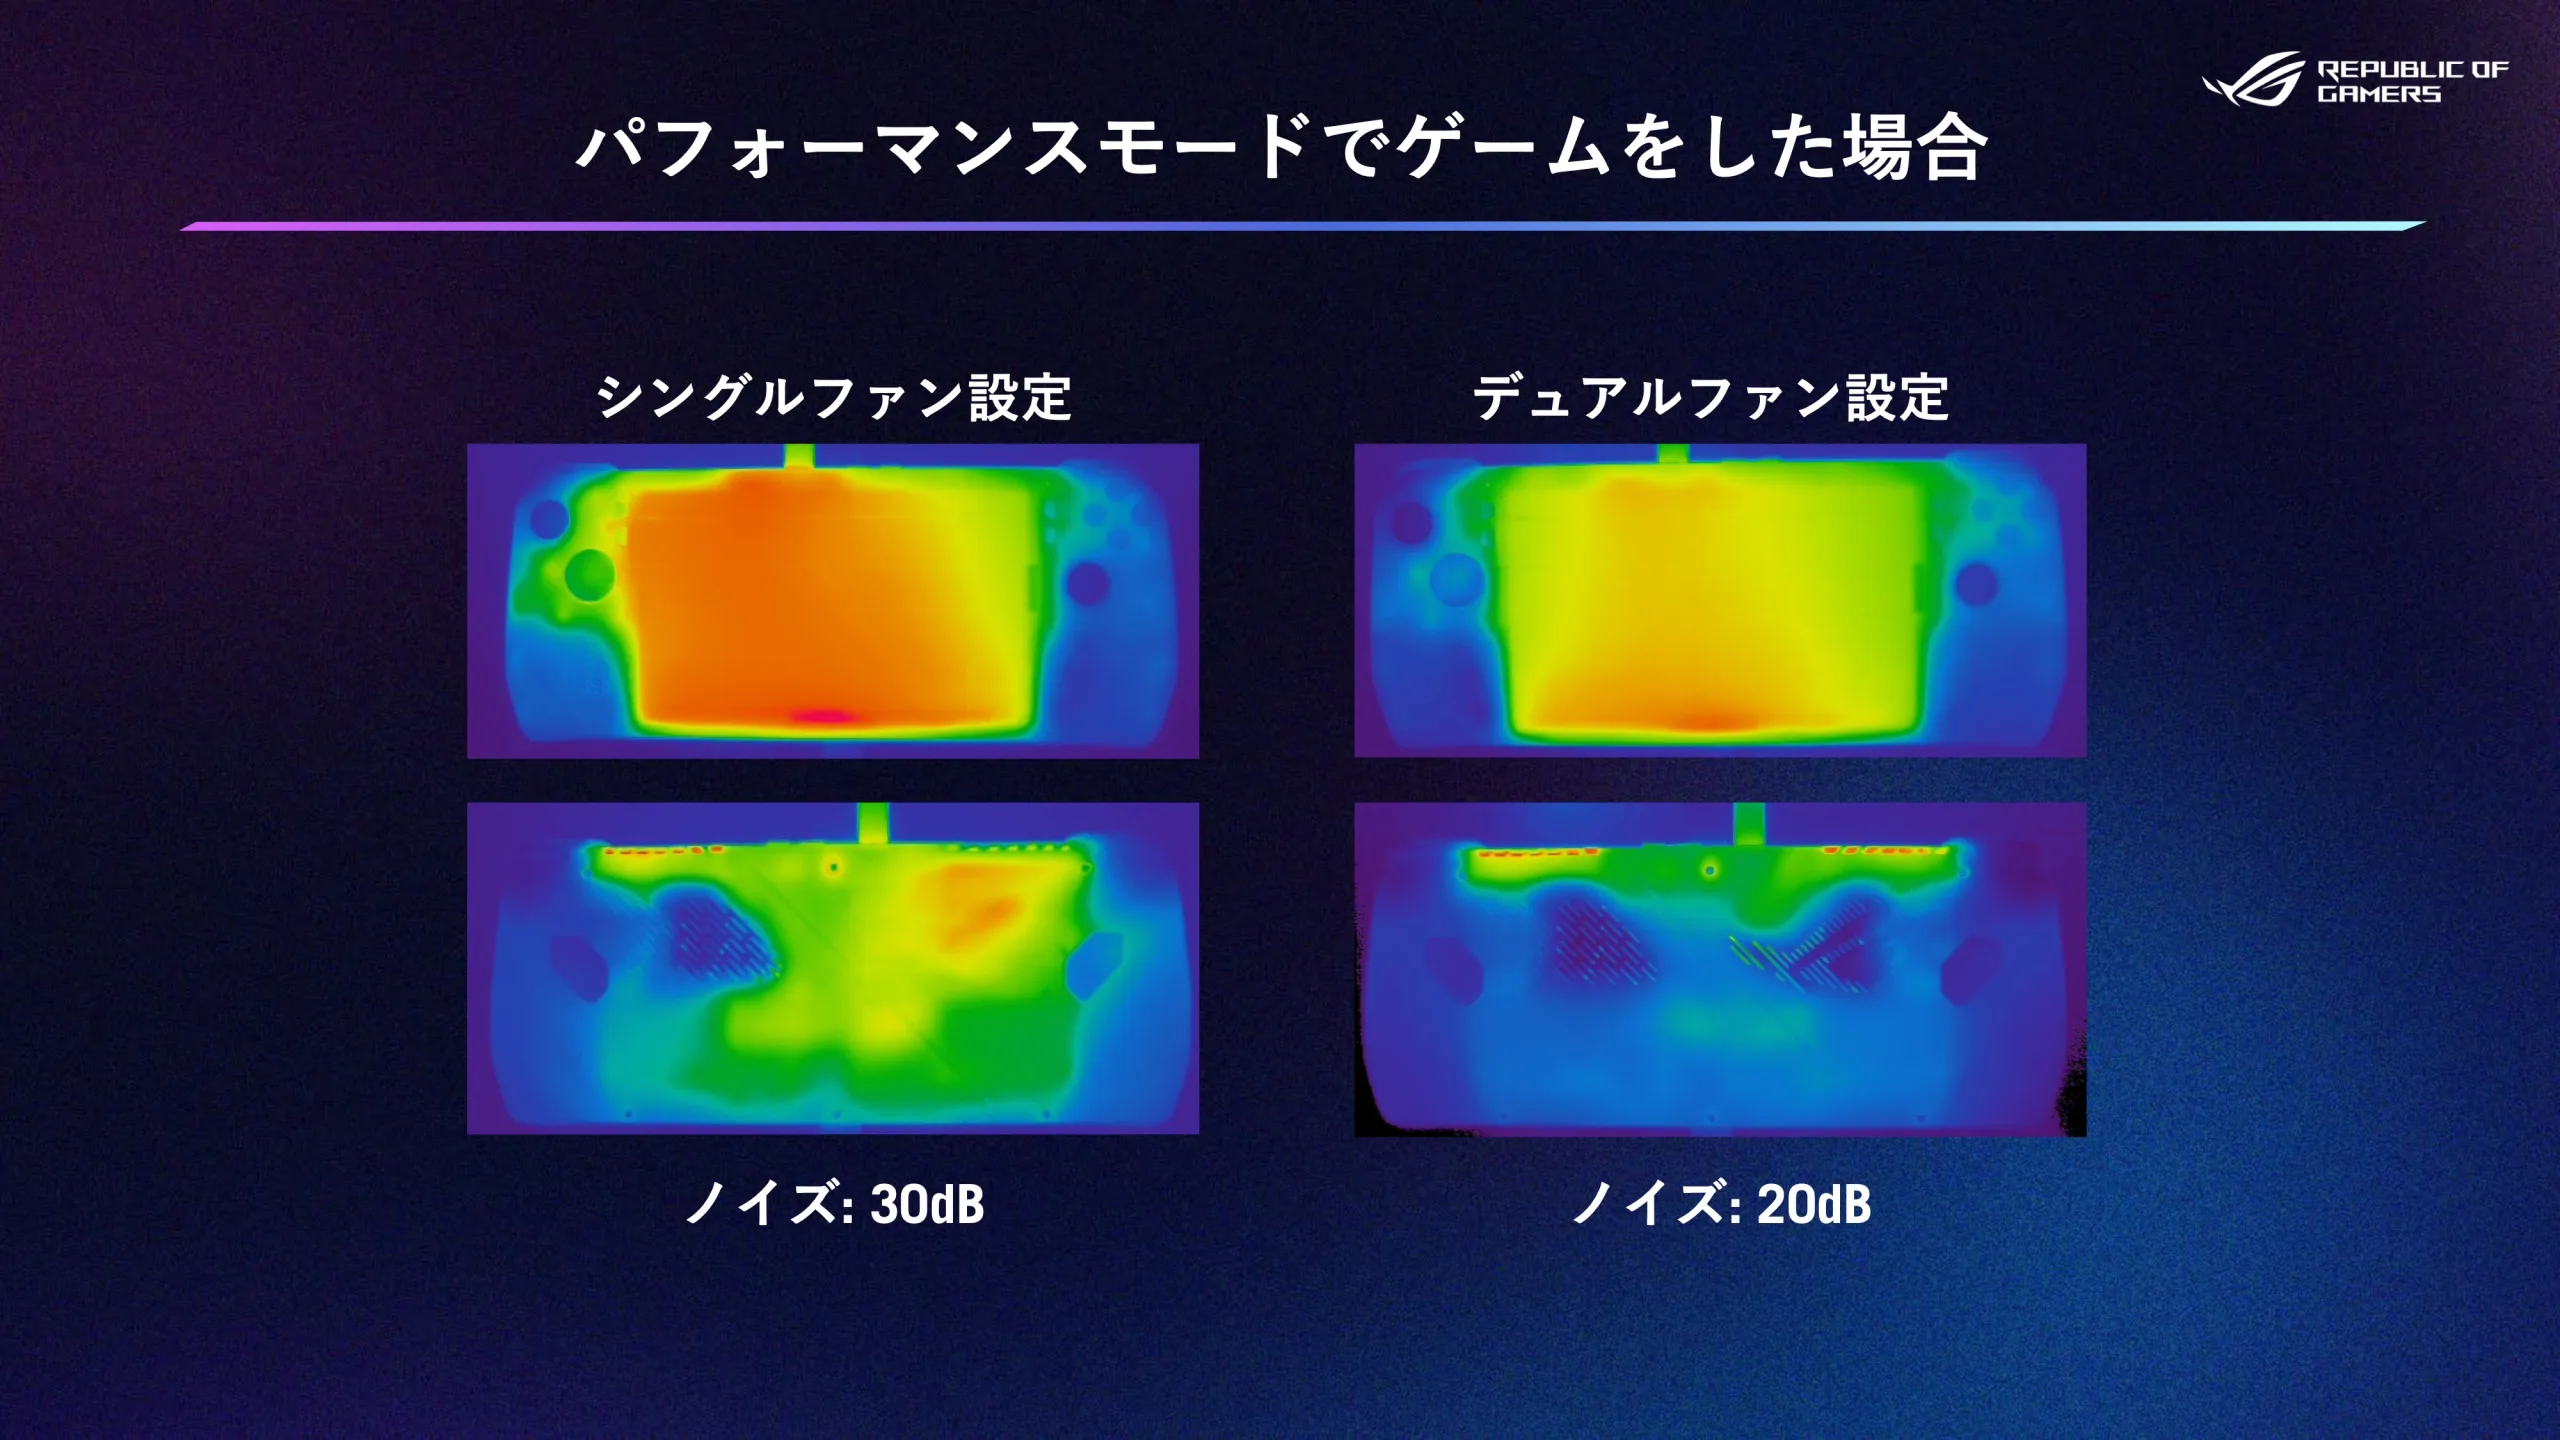 デュアルファン設計により把持部分の表面温度は快適に保たれる。  IMAGE BY ASUS